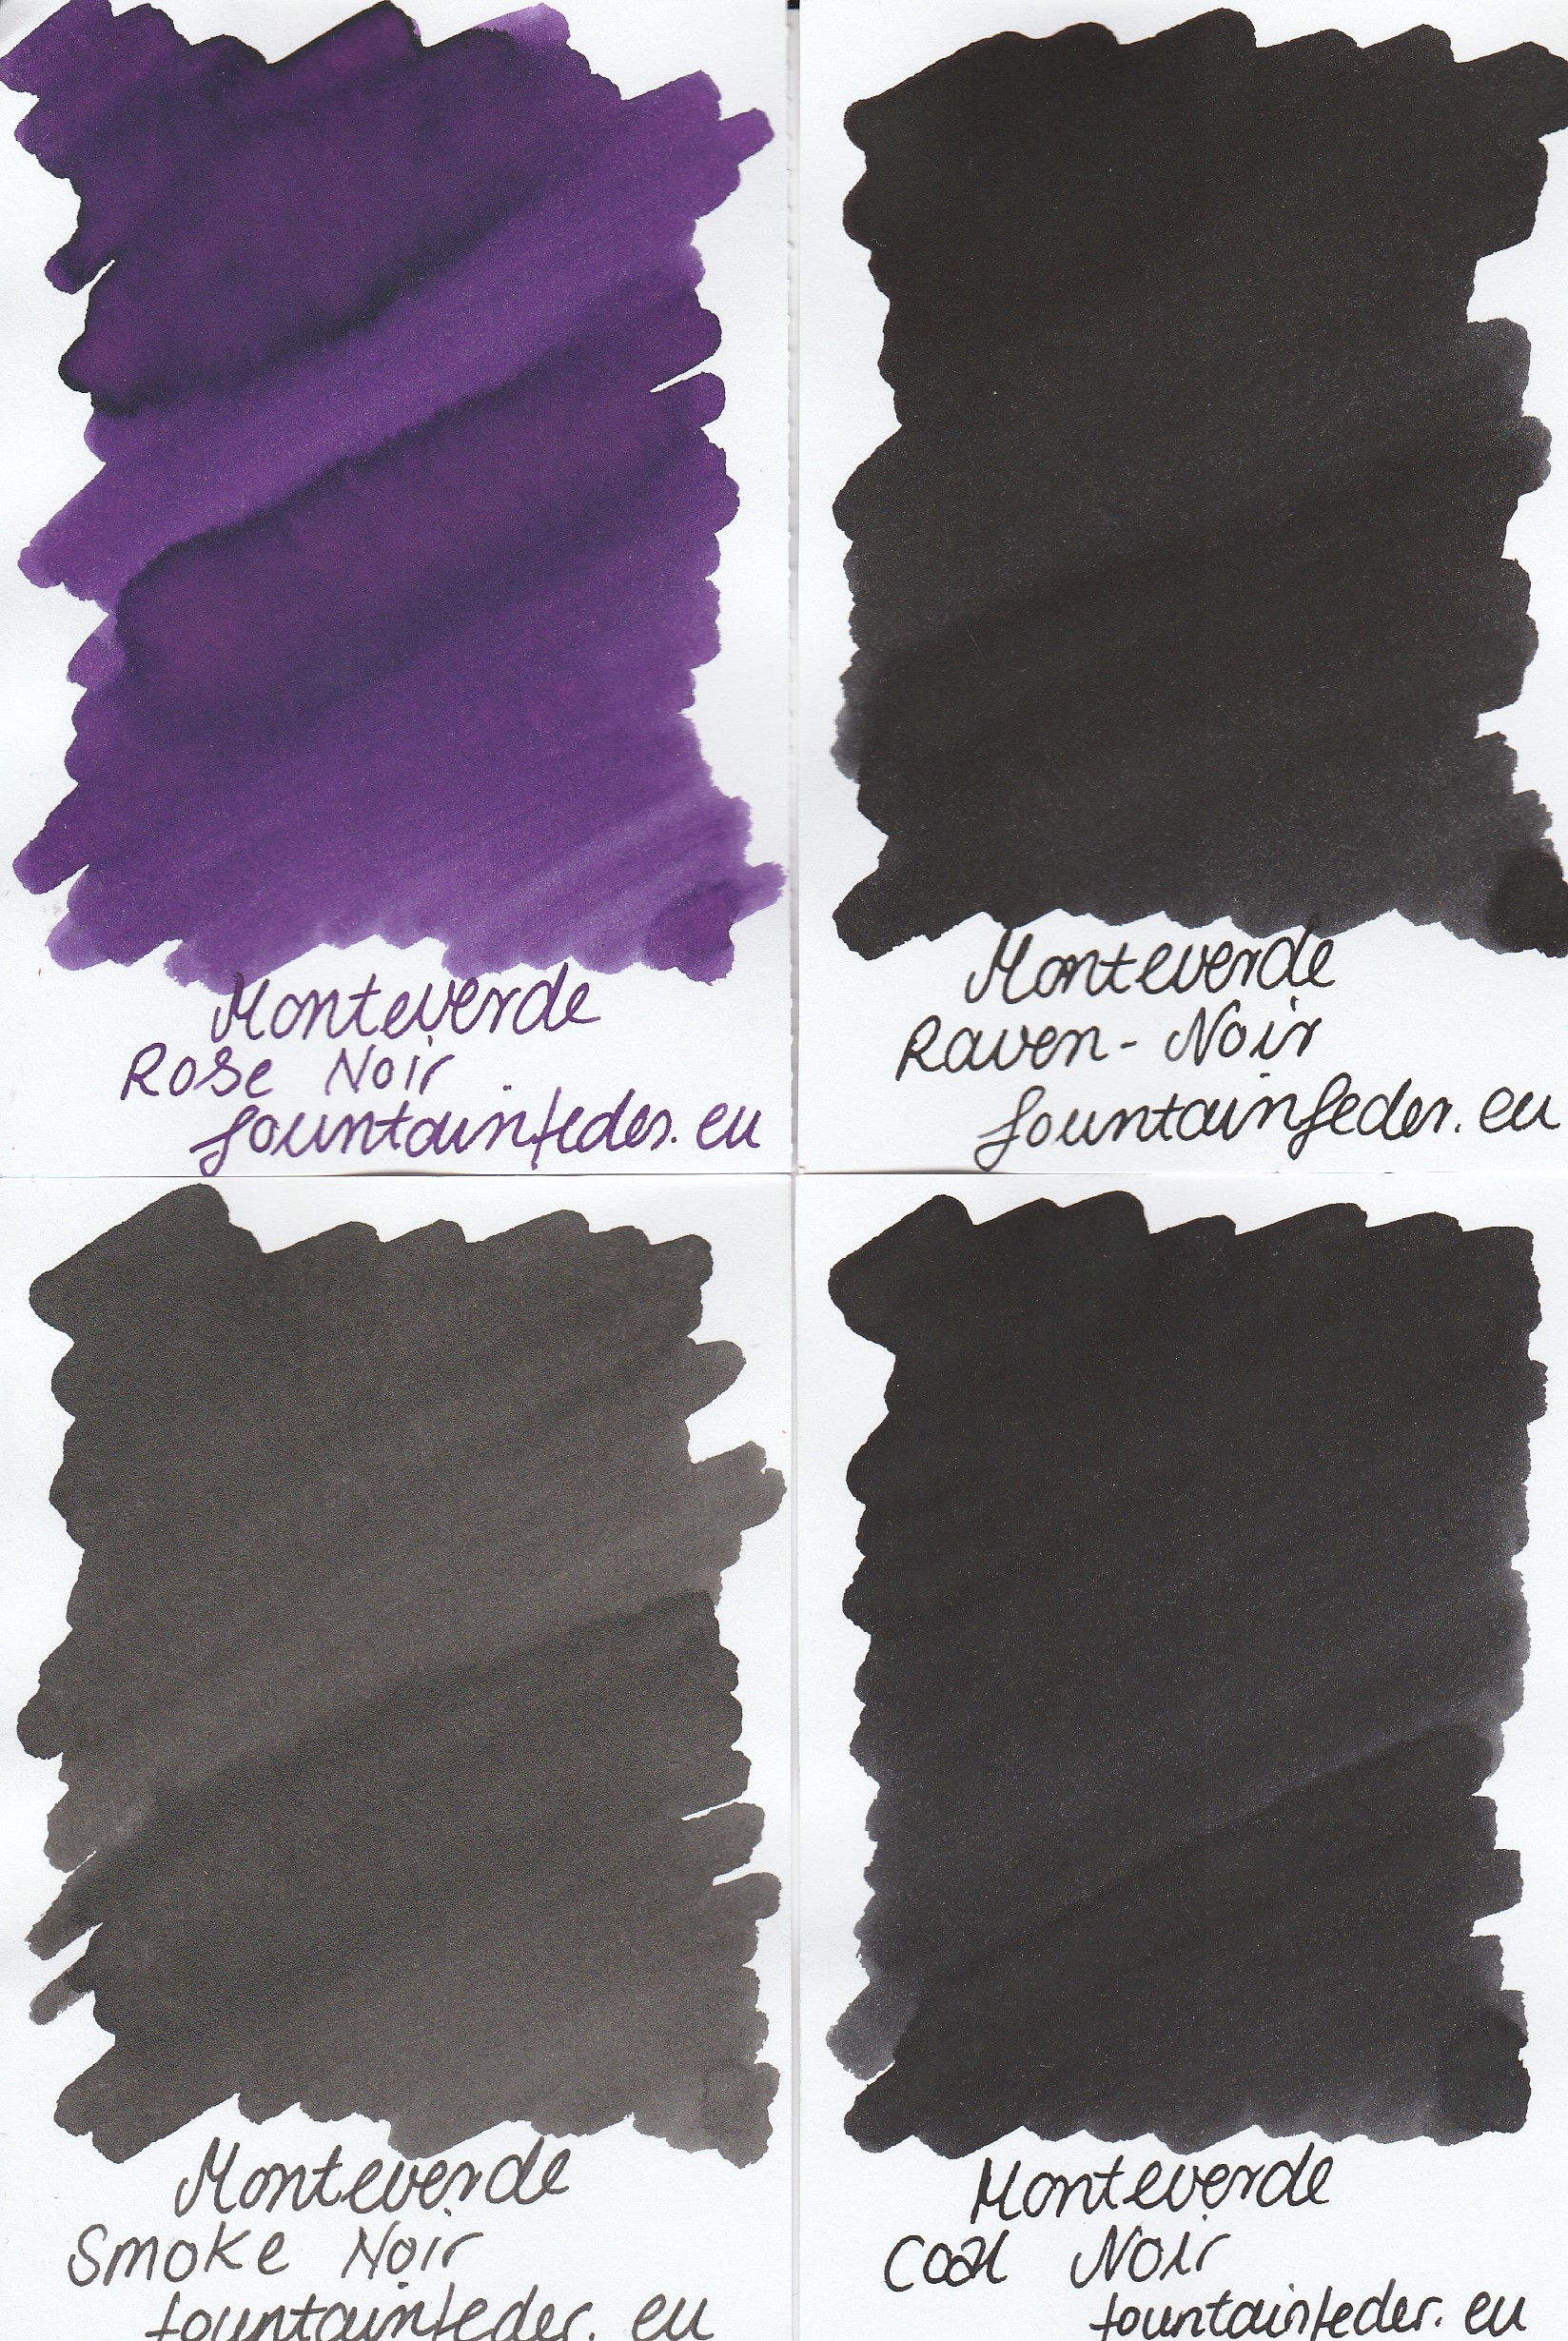 Monteverde Mercury Noir Ink Sample 2ml 